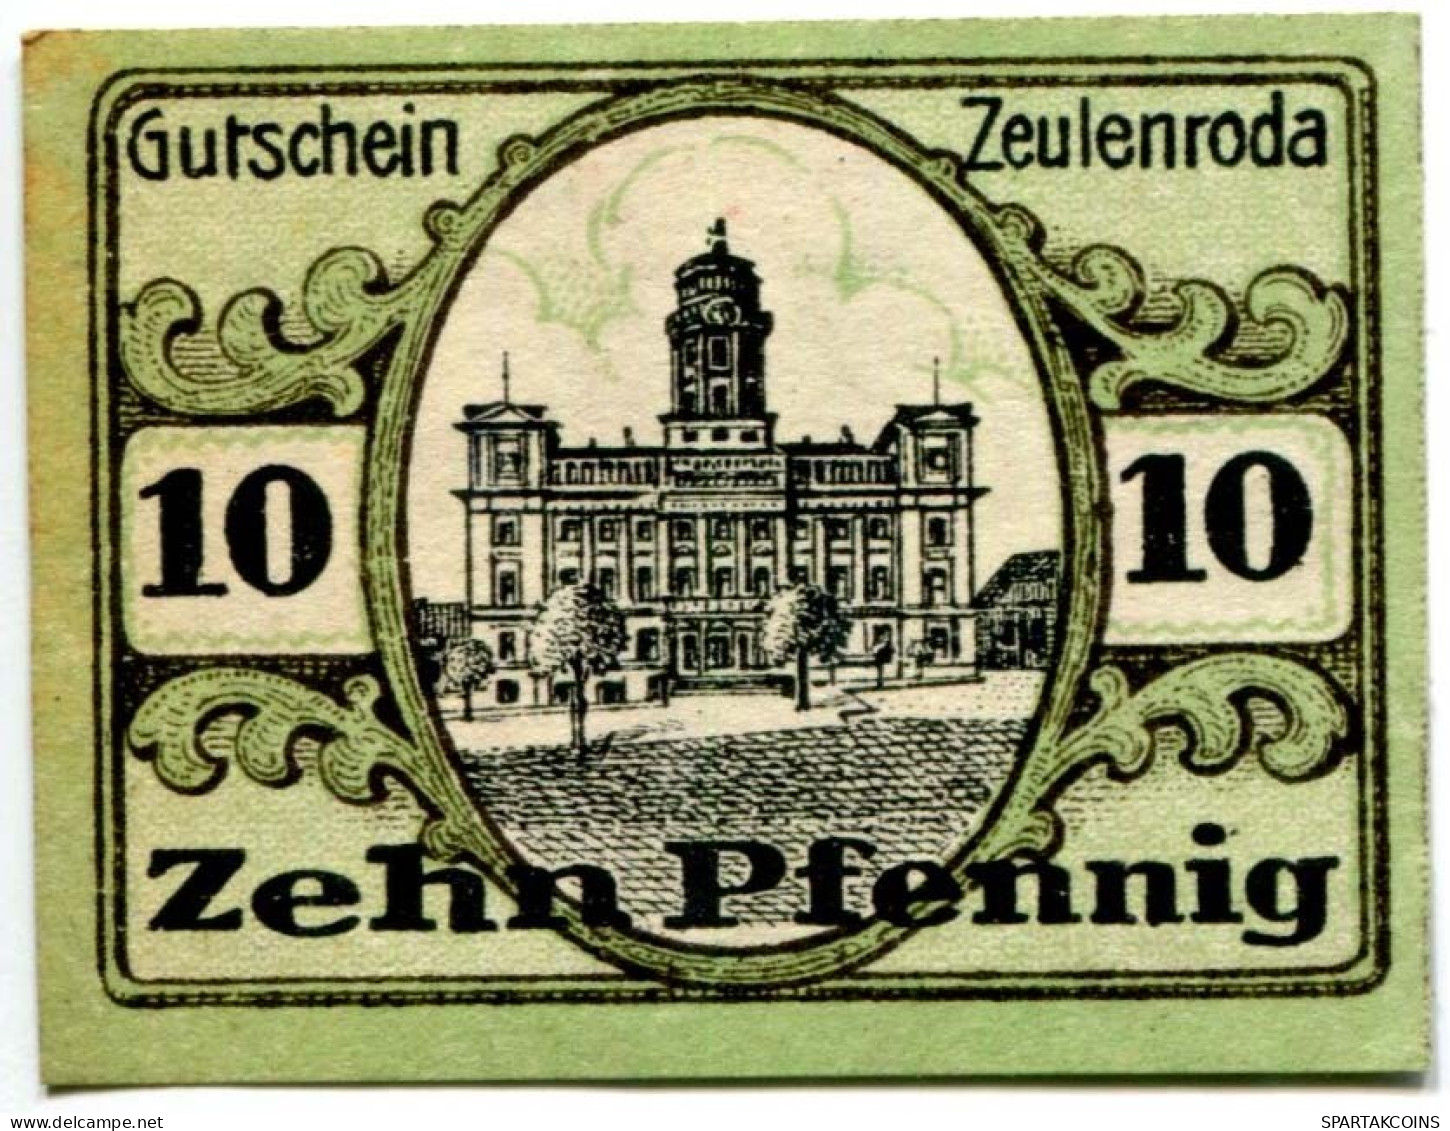 10 PFENNIG 1920 Stadt ZEULENRODA Reuss DEUTSCHLAND Notgeld Papiergeld Banknote #PL608 - [11] Local Banknote Issues